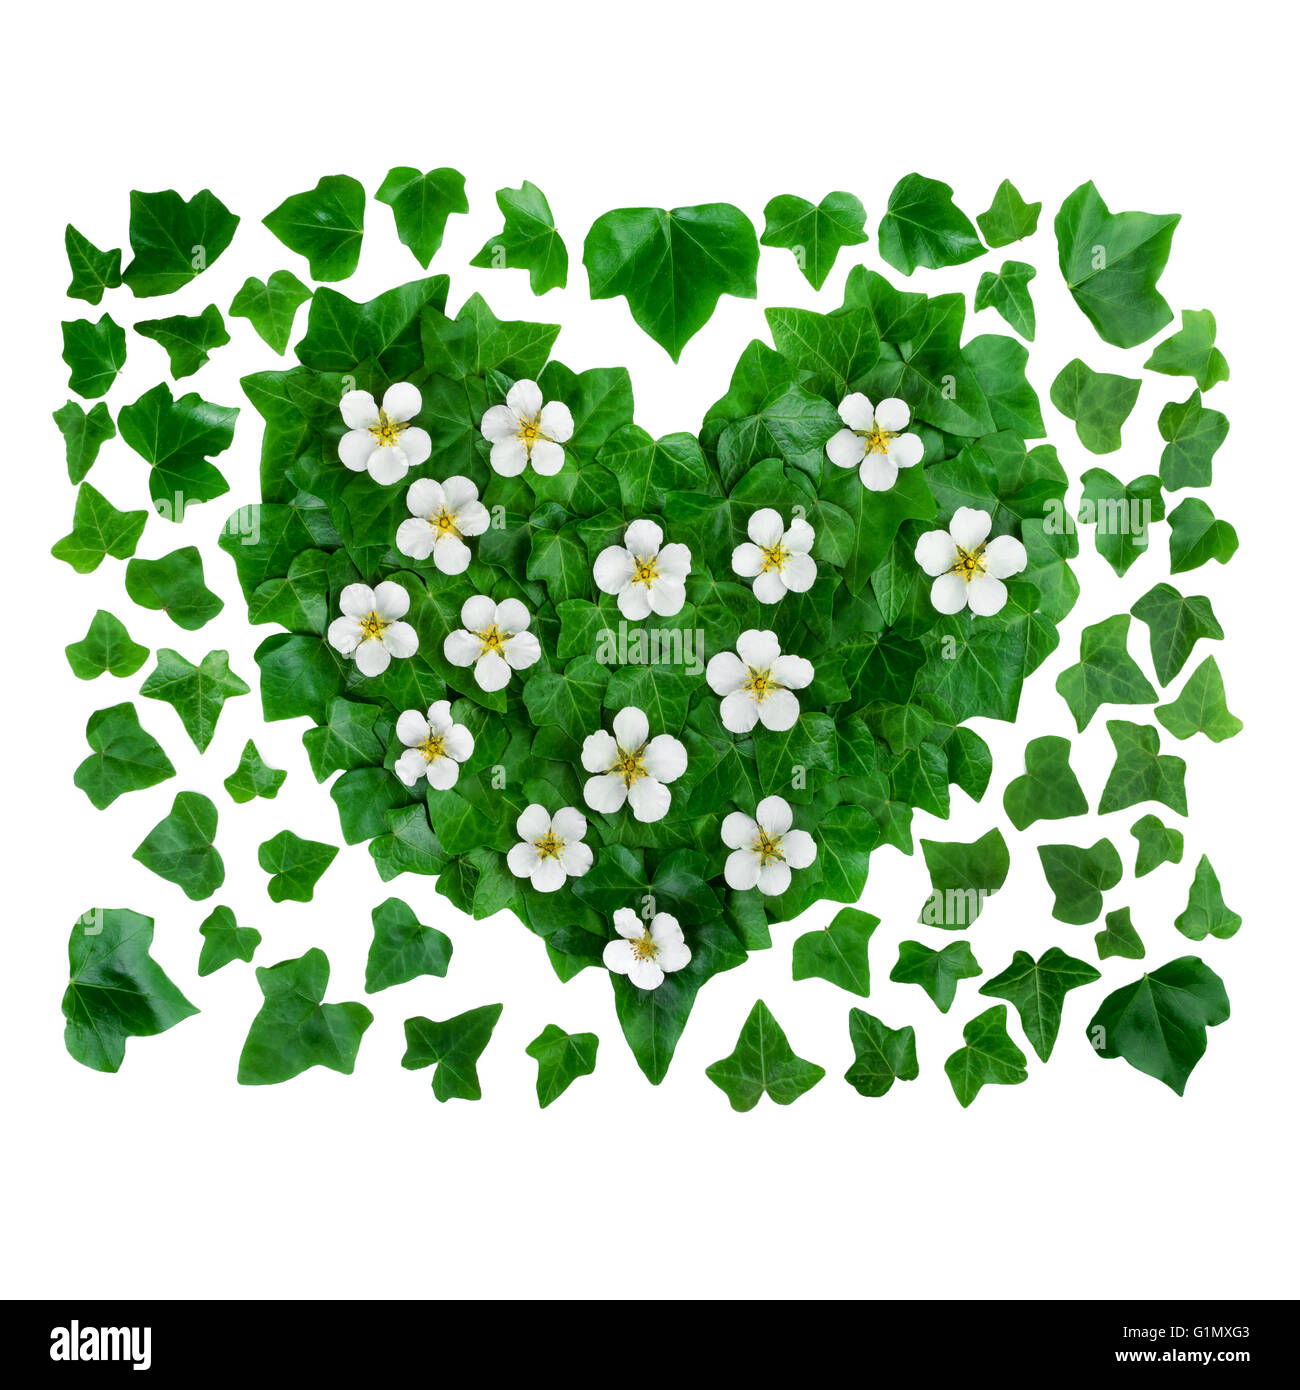 Motif de fond organique naturelle faite de feuilles de lierre vert et de fleurs blanches. Mise à plat. Banque D'Images